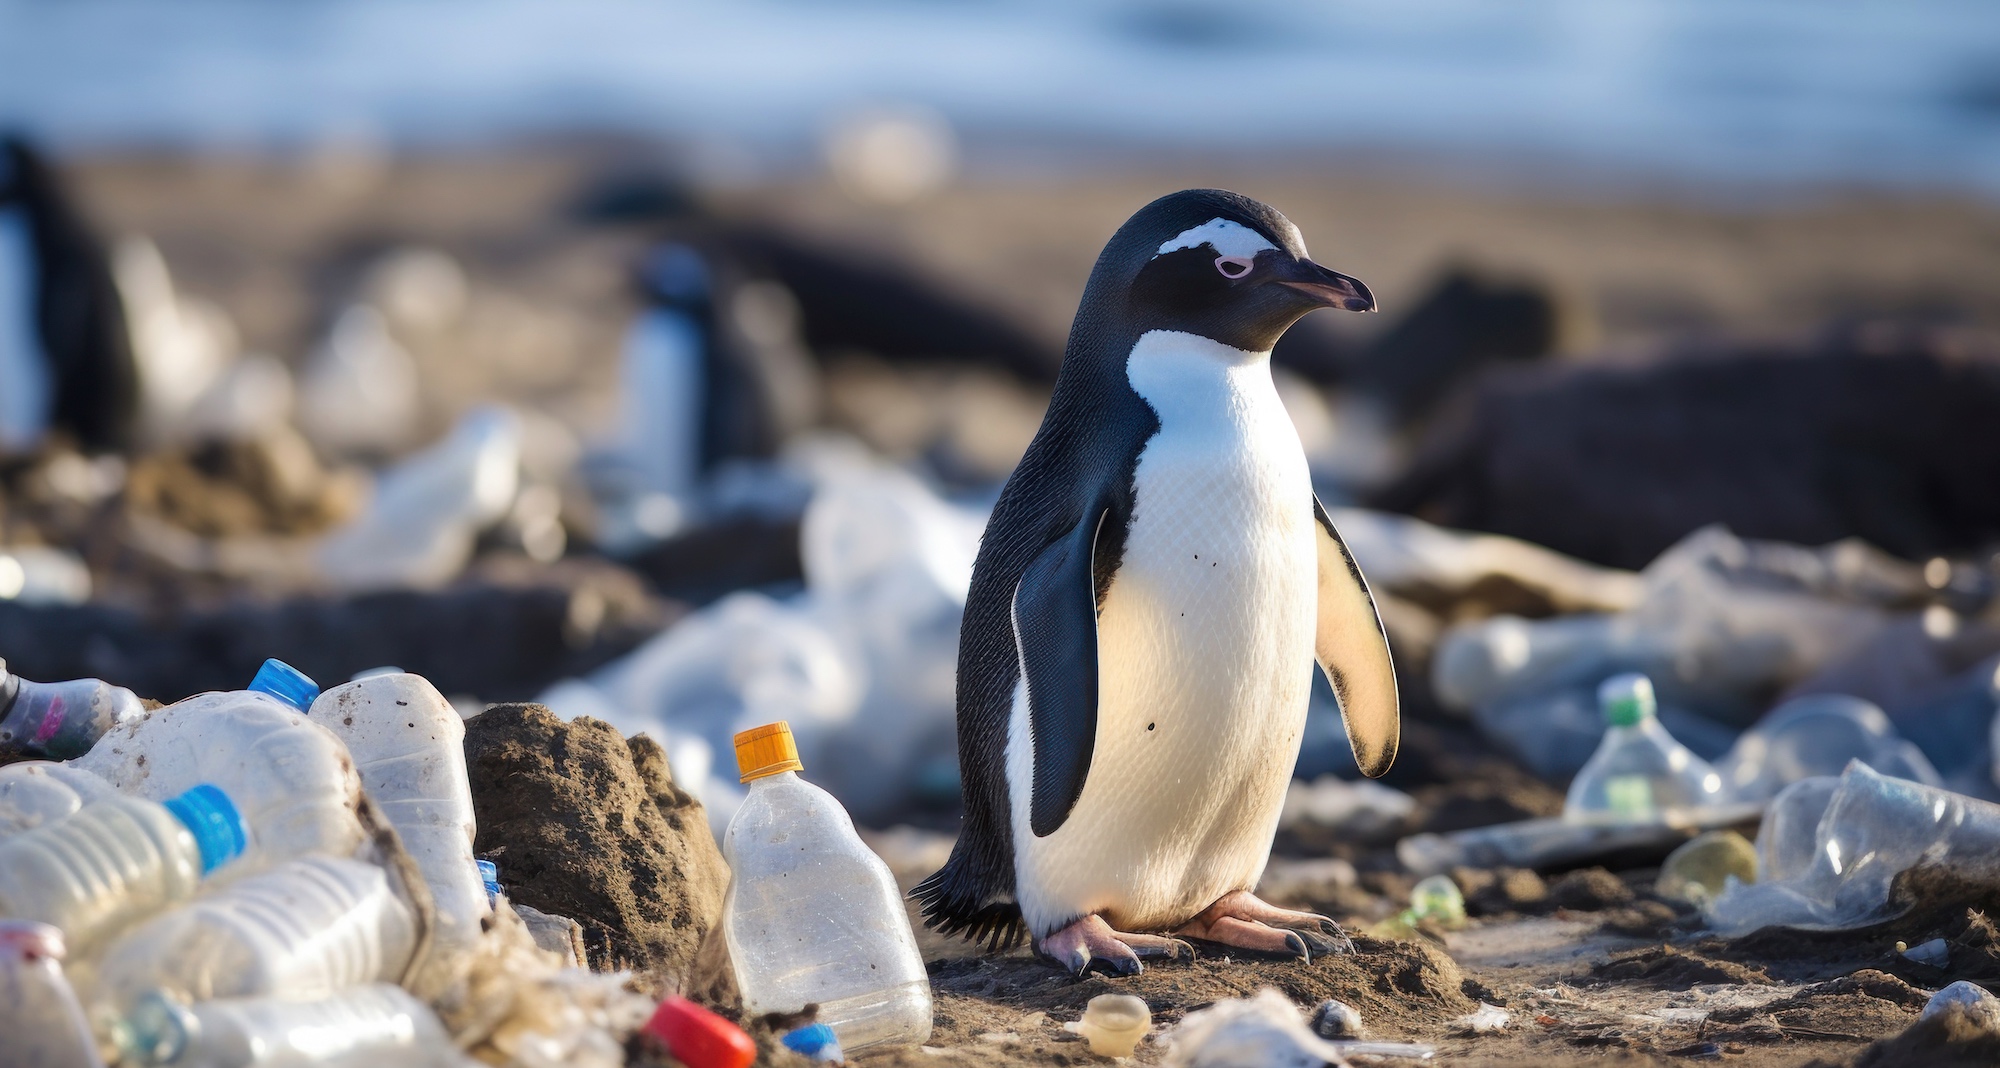 Quasiment tous les oiseaux du pôle nord et du pôle sud ont du plastique dans leurs estomacs. © Wararat, Adobe Stock